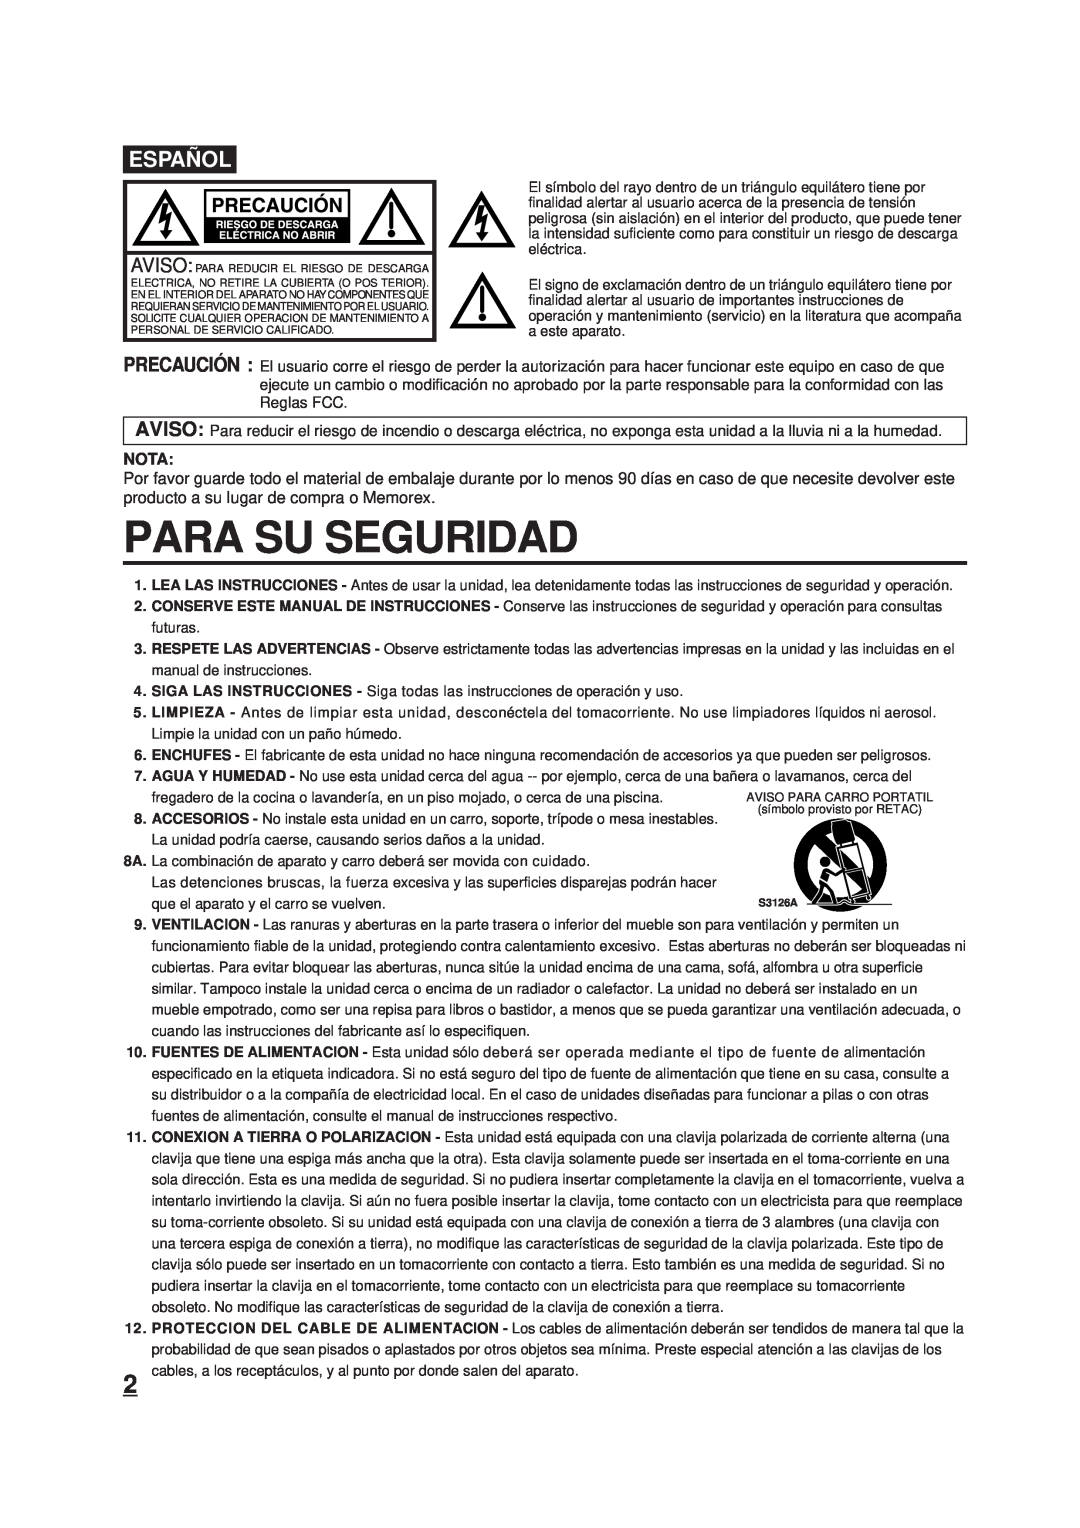 Memorex DT1900-C manual Para Su Seguridad, Españ Ol, Nota 